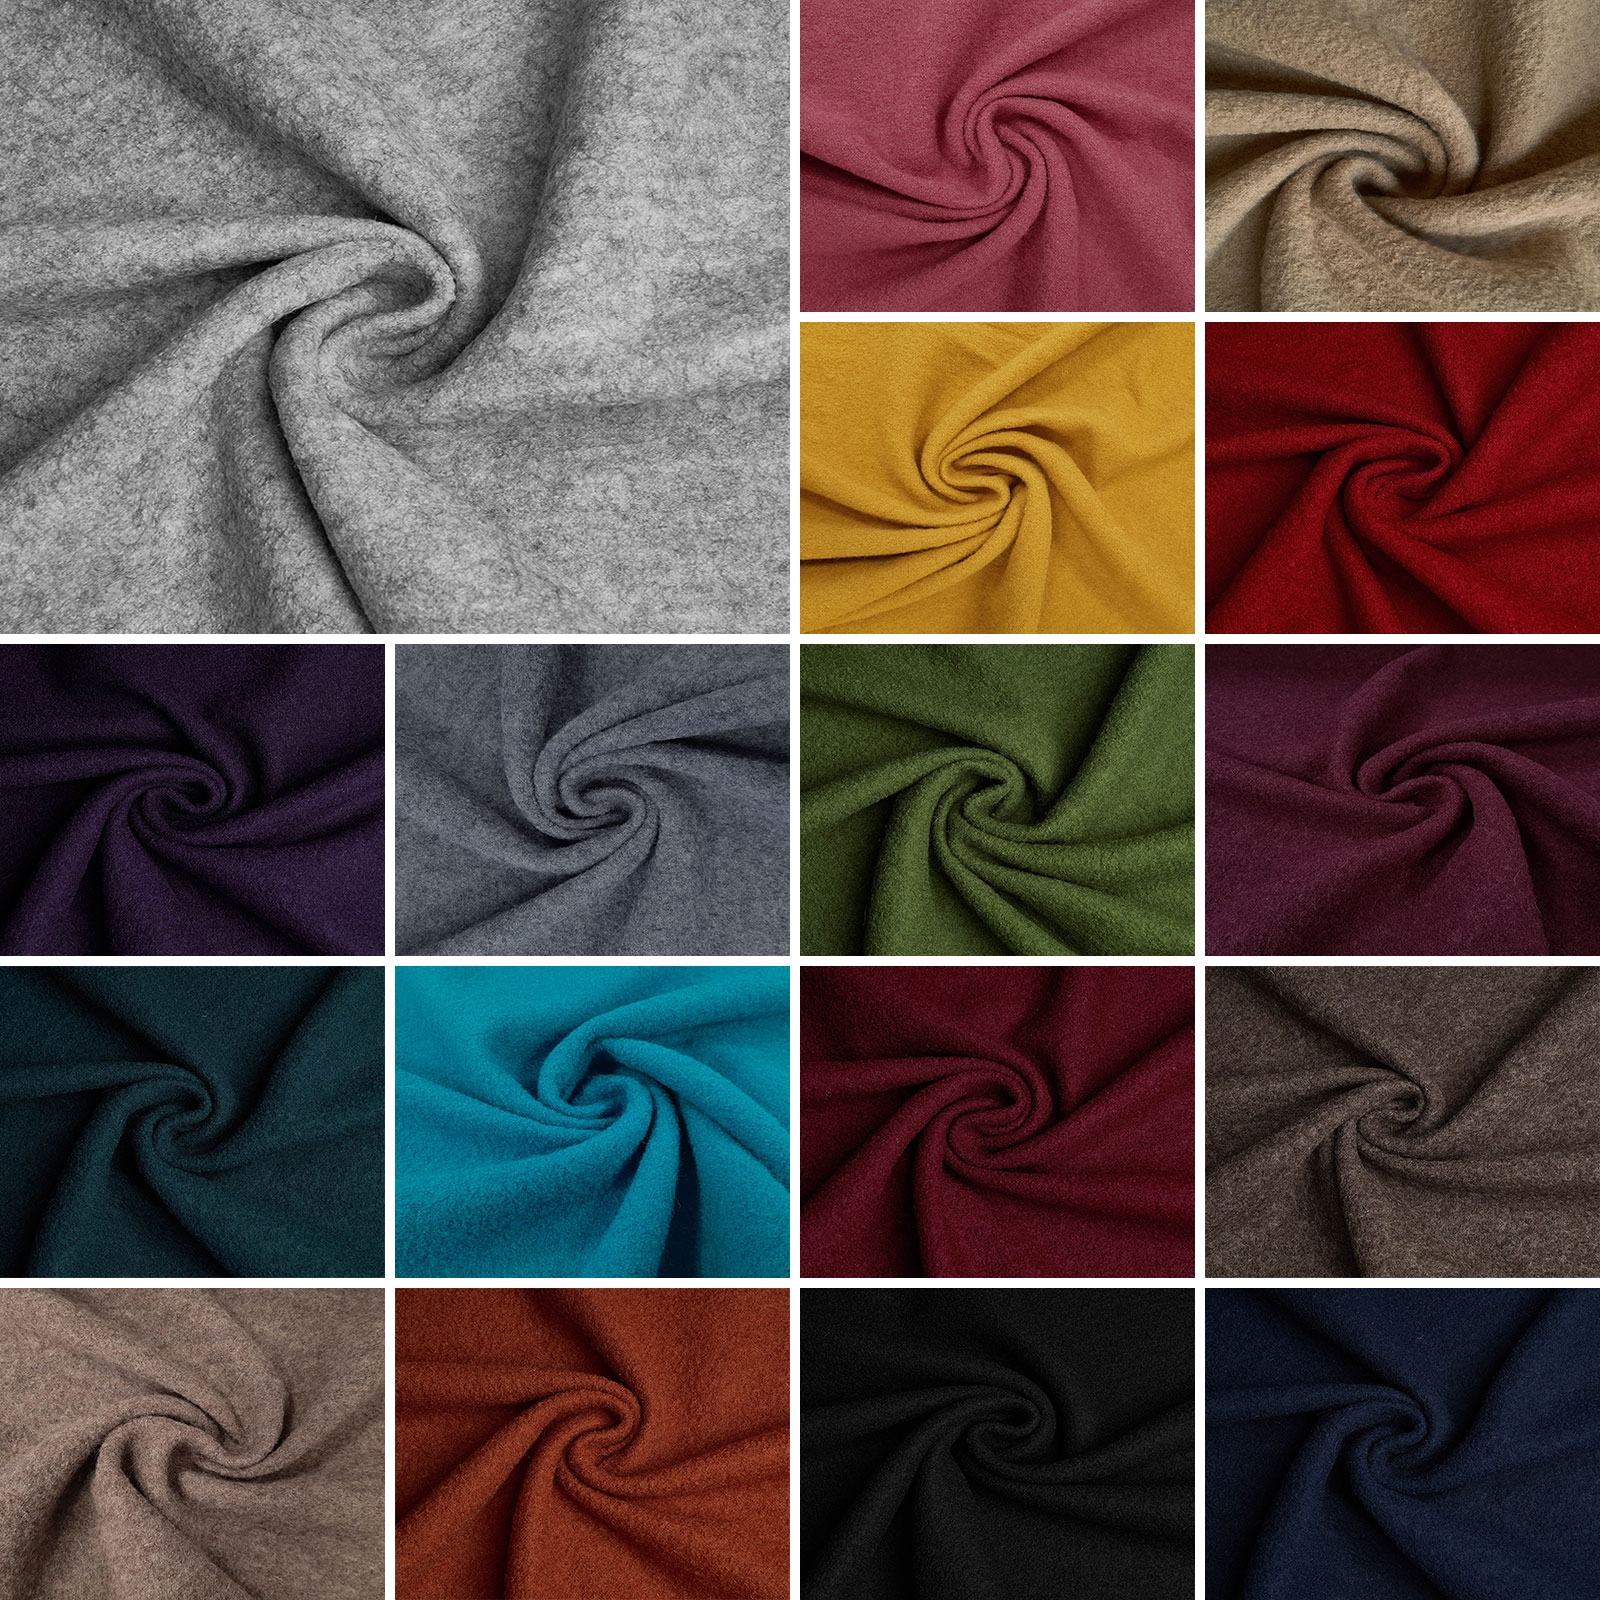 Fabian - Boiled Wool / Loden Fabric - 100% Virgin Wool